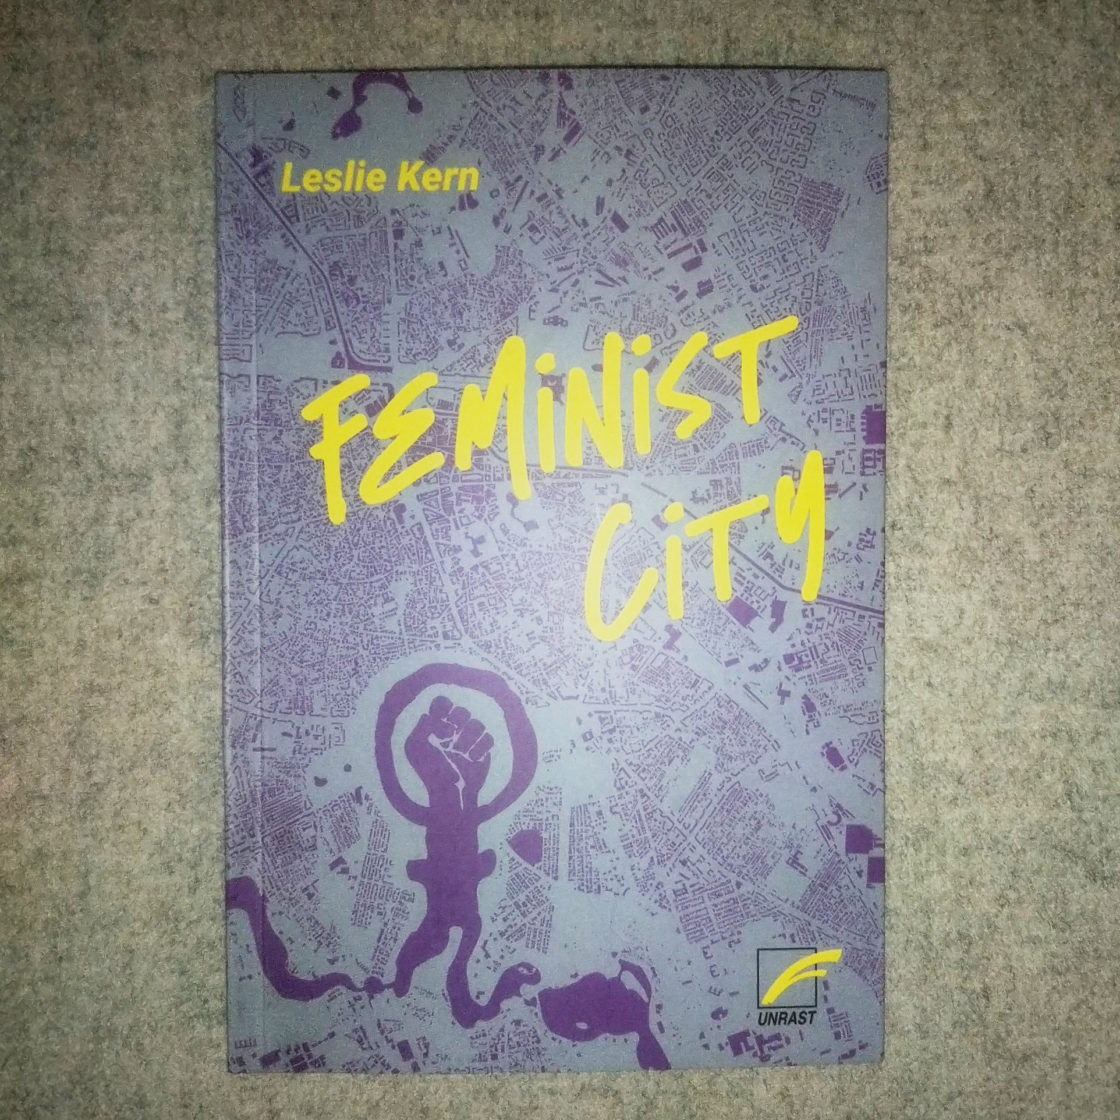 cover von dem Buch "Feminist City" von Leslie Kern. Auf hellgrauem Hintergrund in lila Stadtplan, Faust und Frau Zeichen, Titel in neon gelb, unten Rechts ein Logo von UNRAST